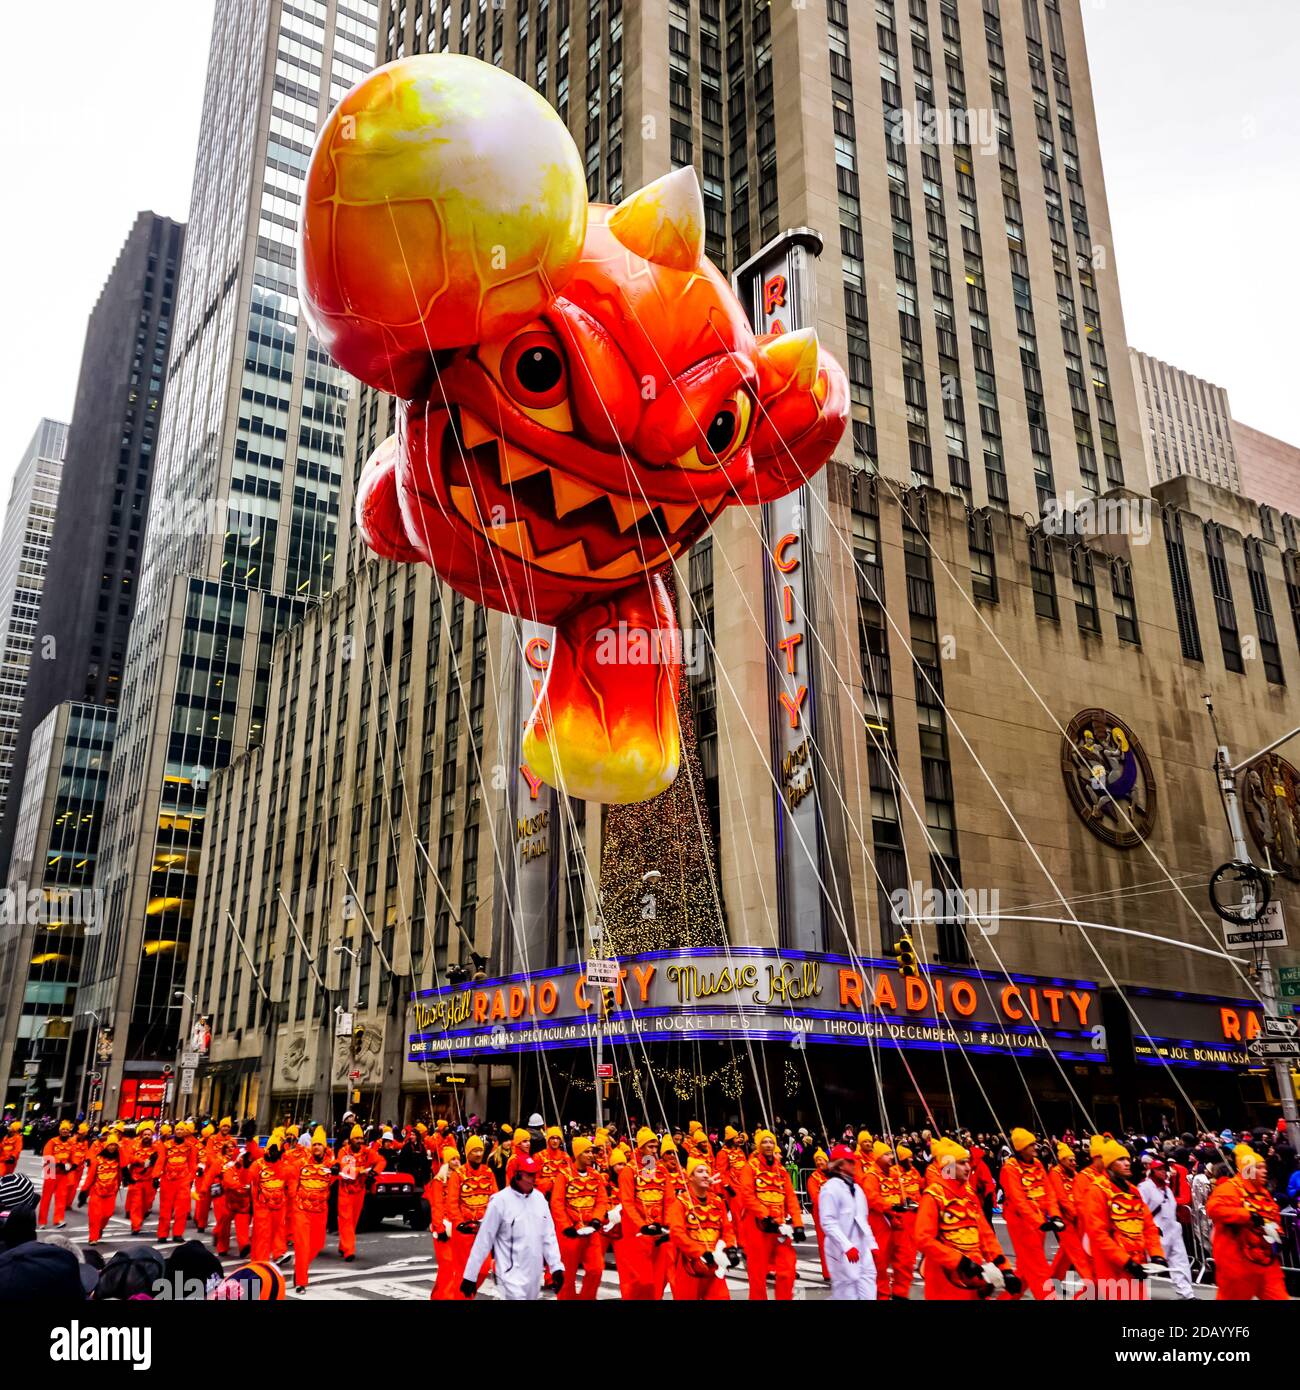 El globo de Skylander Eruptor flota en el aire durante el día de Acción de Gracias de Macy Desfile de día a lo largo de la Avenida de las Américas con la Radio Música Hall en el fondo Foto de stock